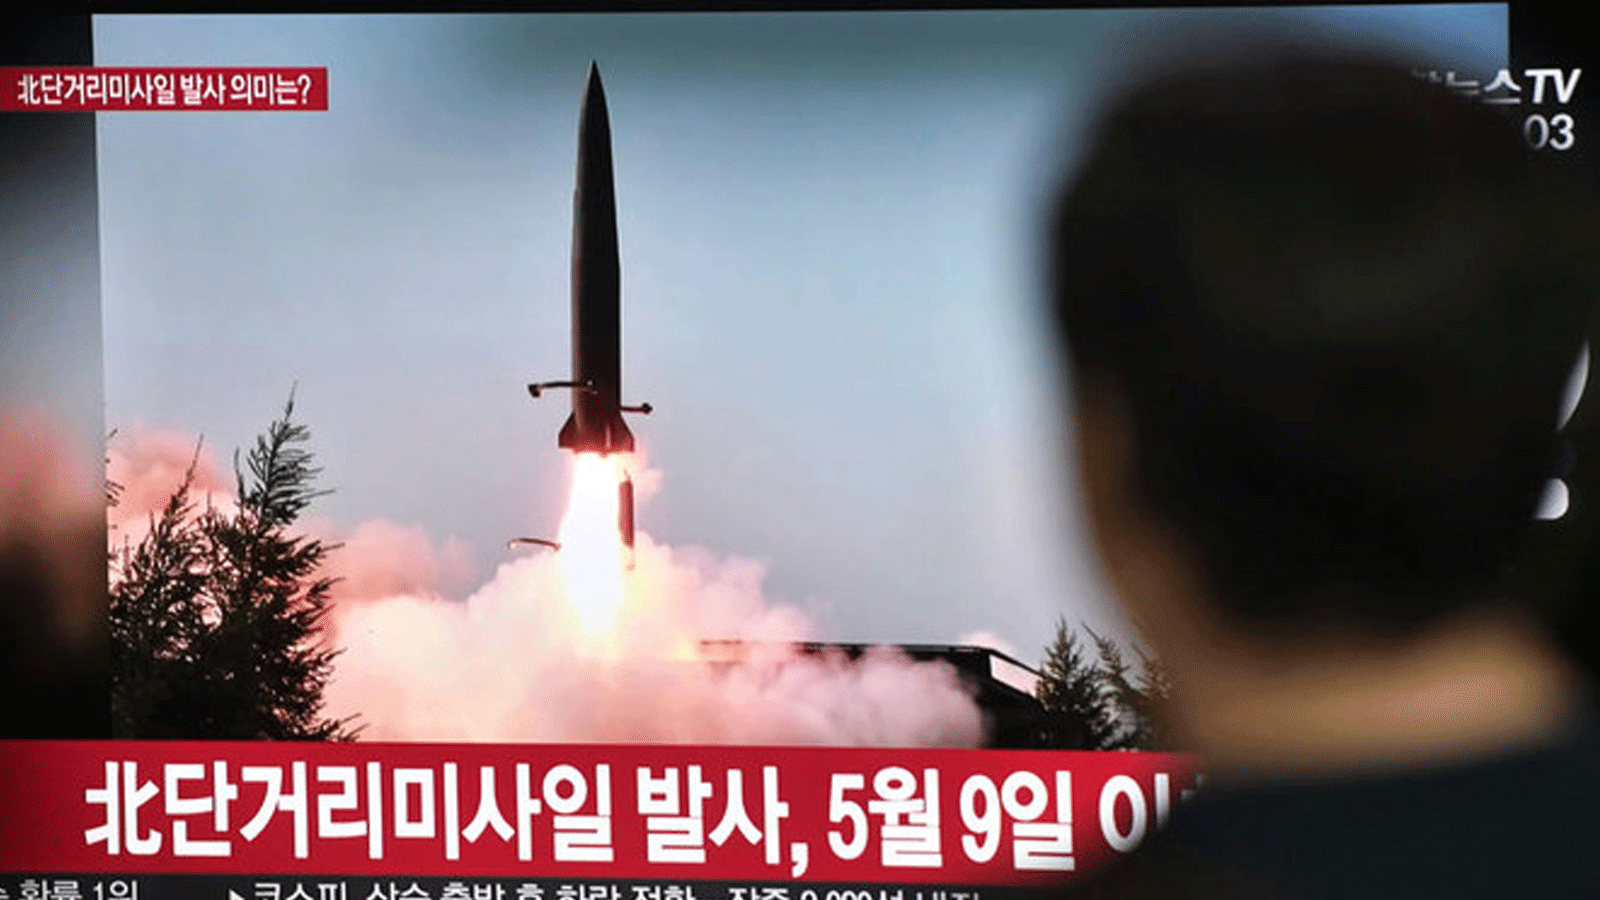 لقطة أرشيفية لصاروخ أطلقته كوريا الشمالية